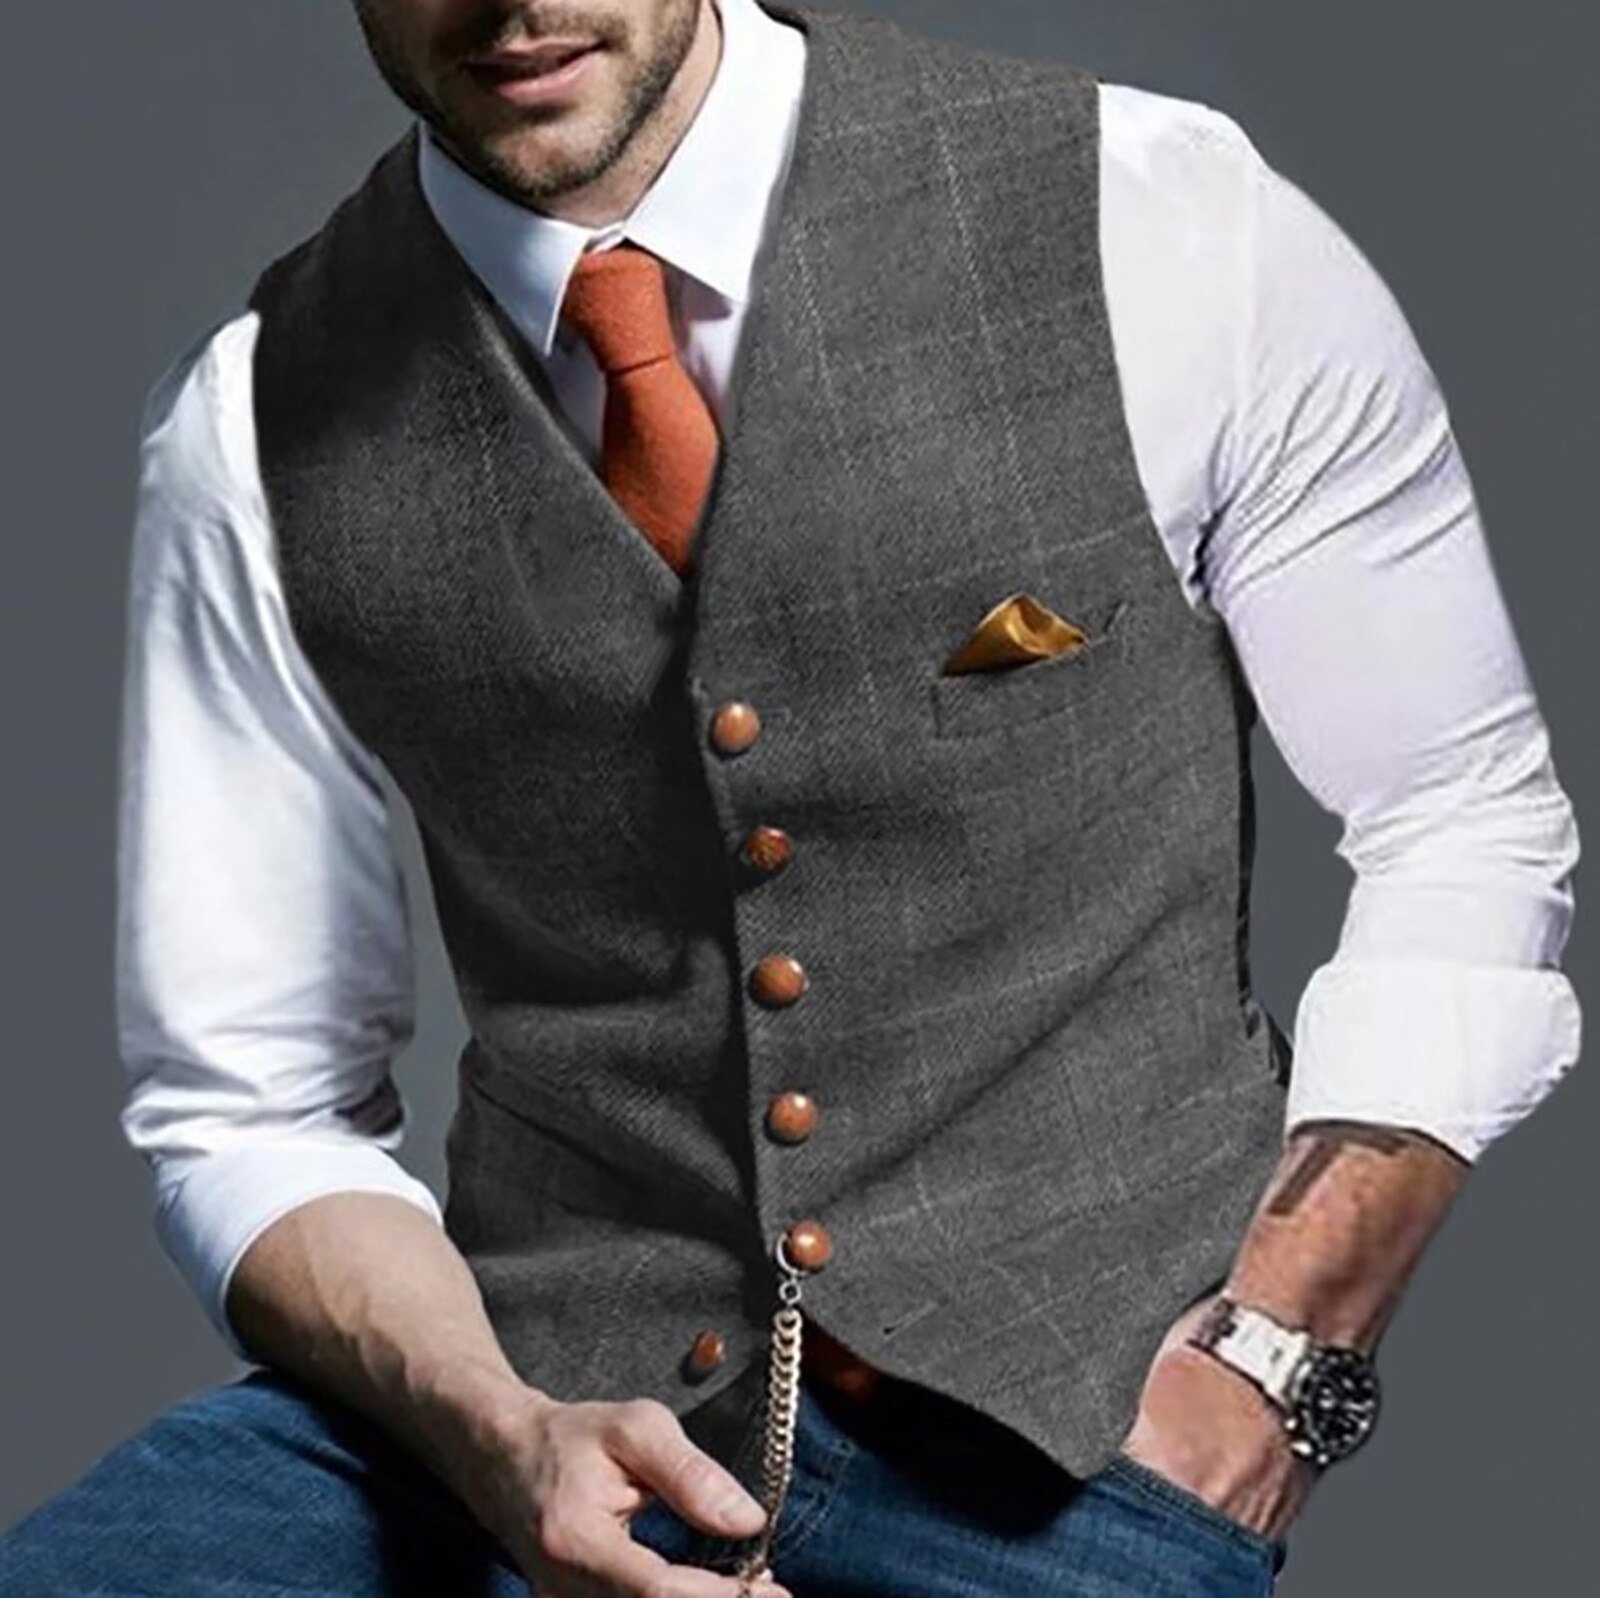 Fashion-Men-s-Casual-Plaid-Printed-Sleeveless-Vests-Slim-Fit-Formal-Business-Jacket-Vintage-Wool-Herringbone-2.jpg